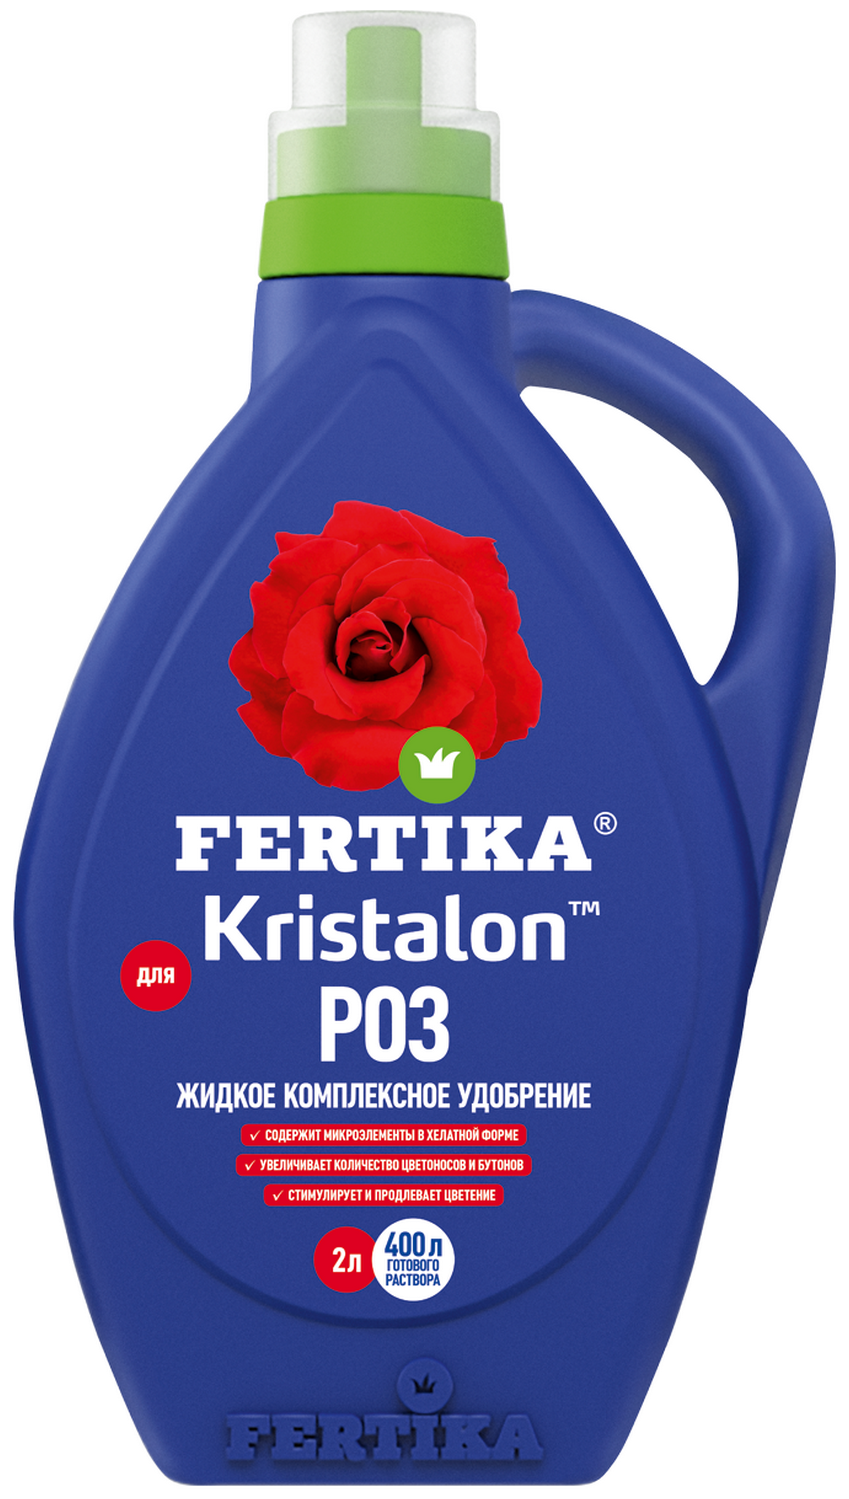 Комплексное удобрение Fertika Kristalon для роз, 2 л